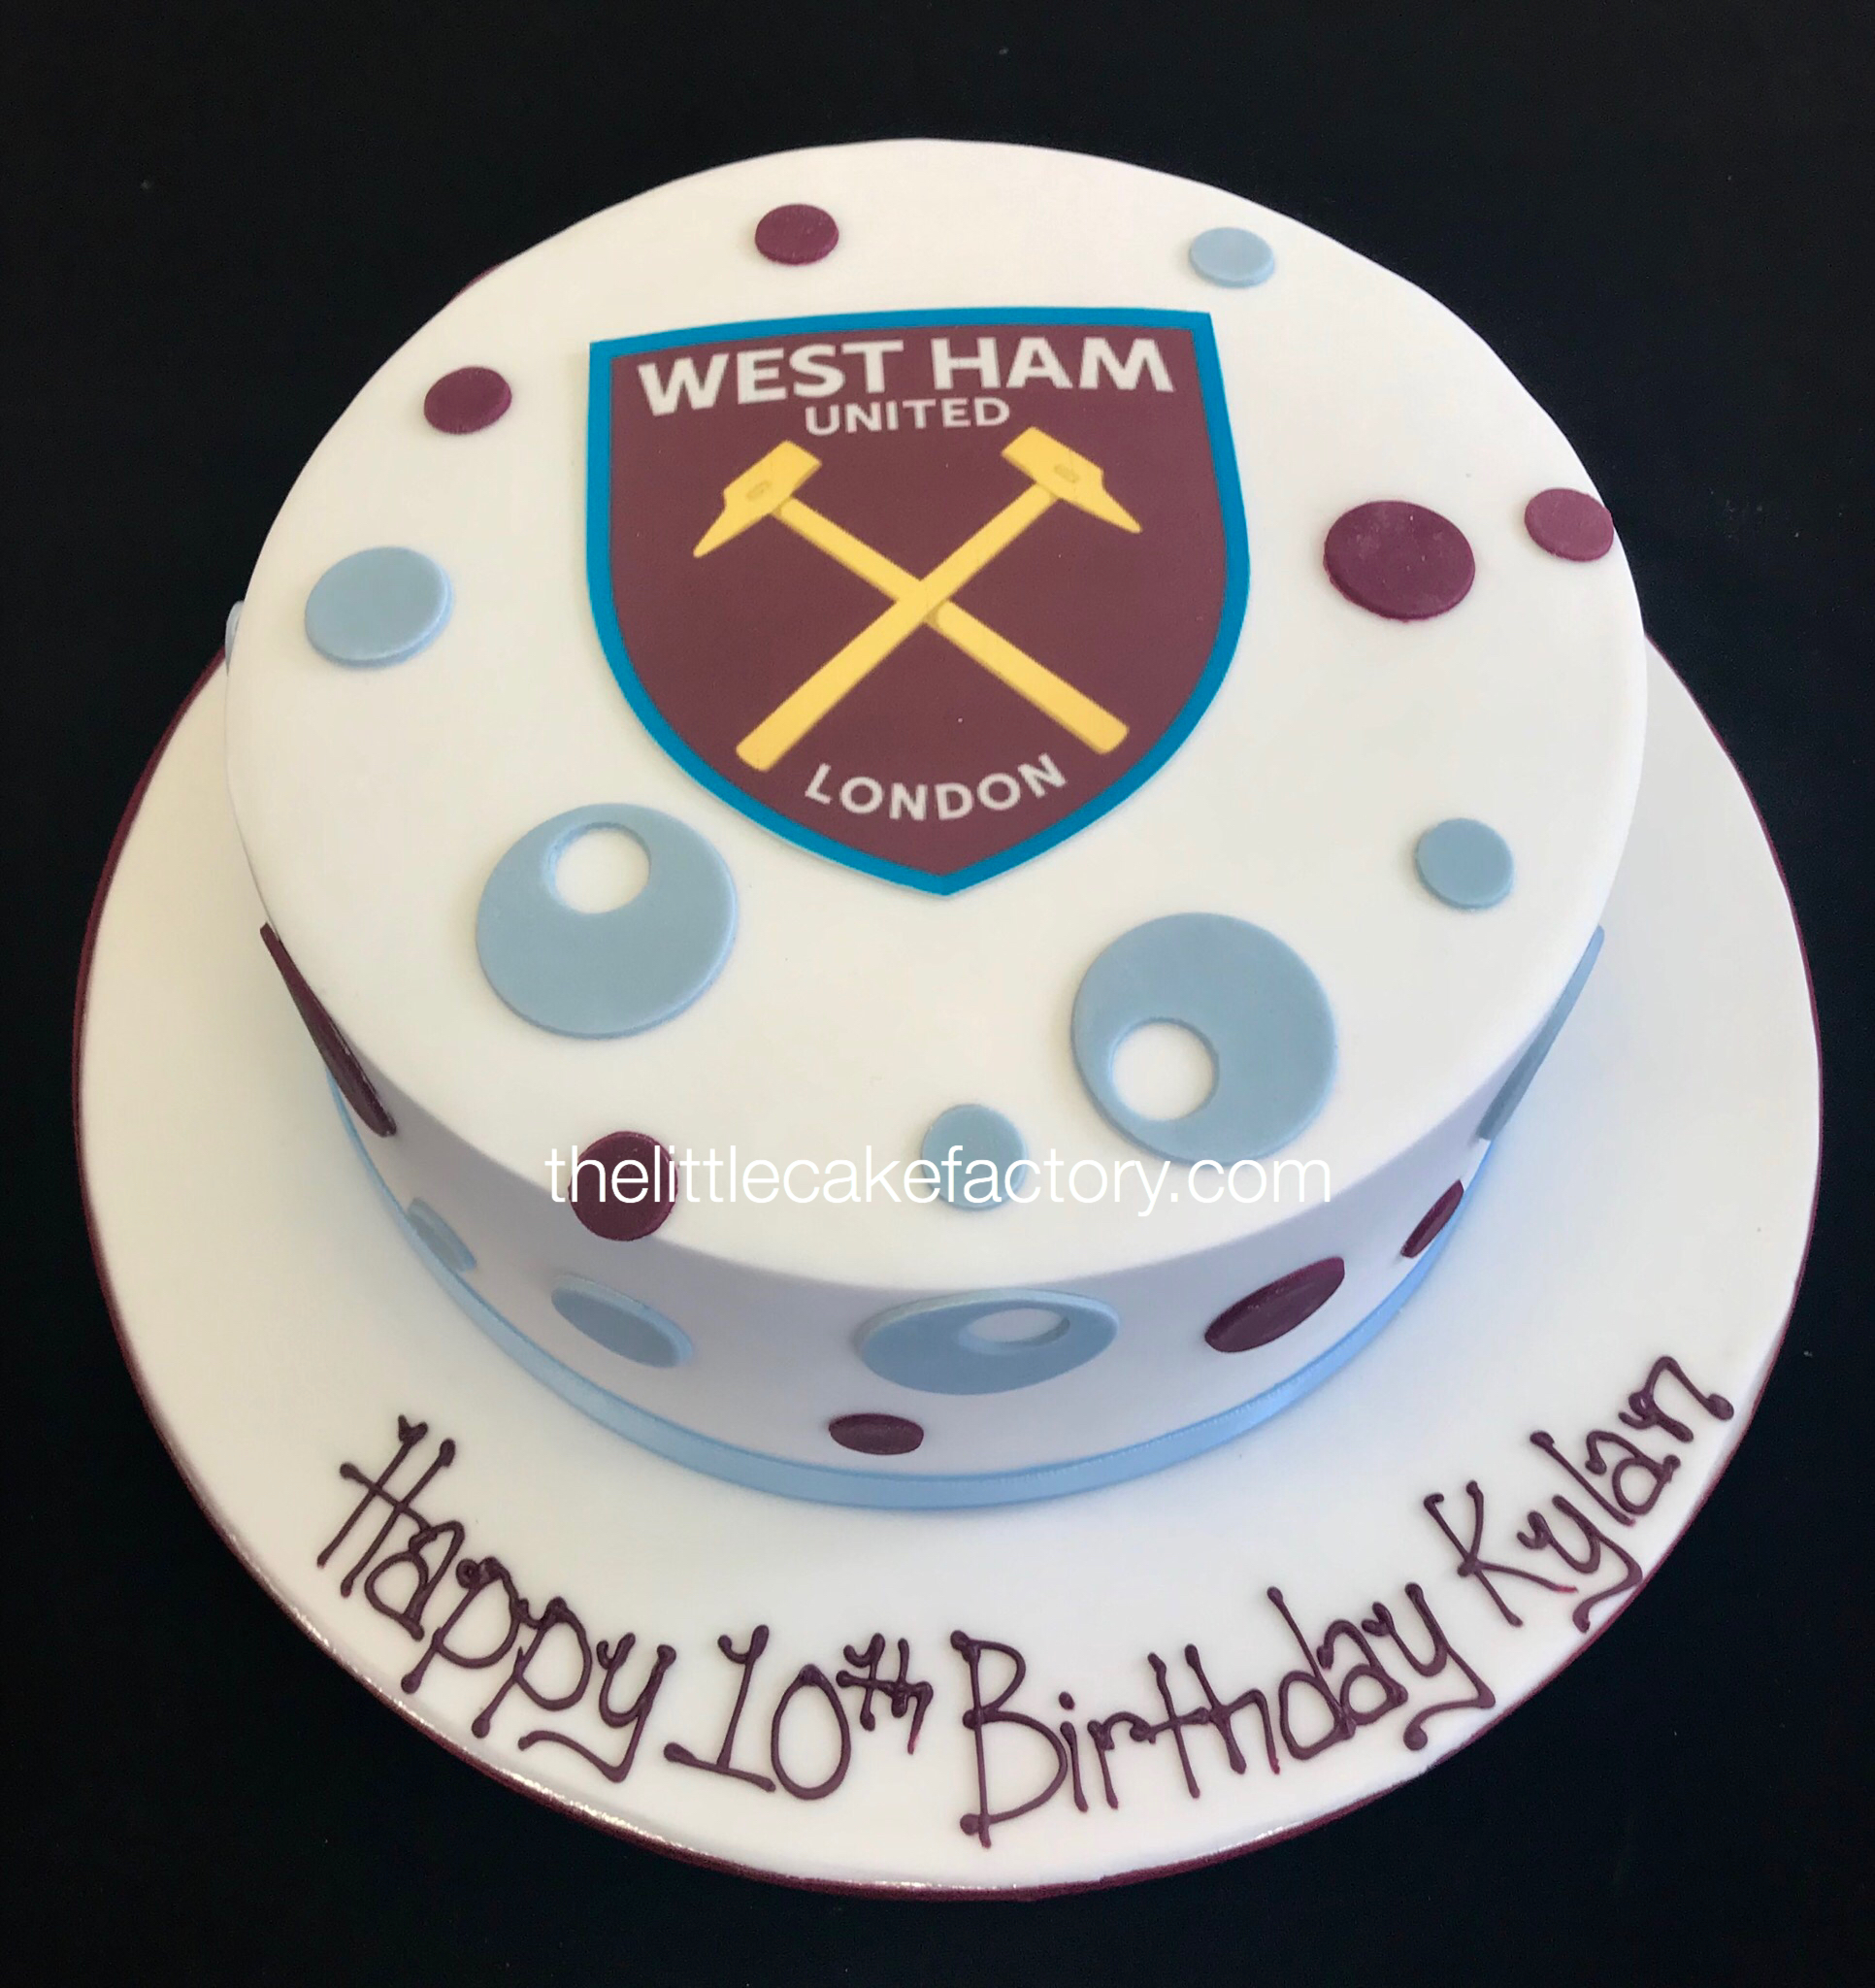 west ham blowing bubbles Cake | Celebration Cakes